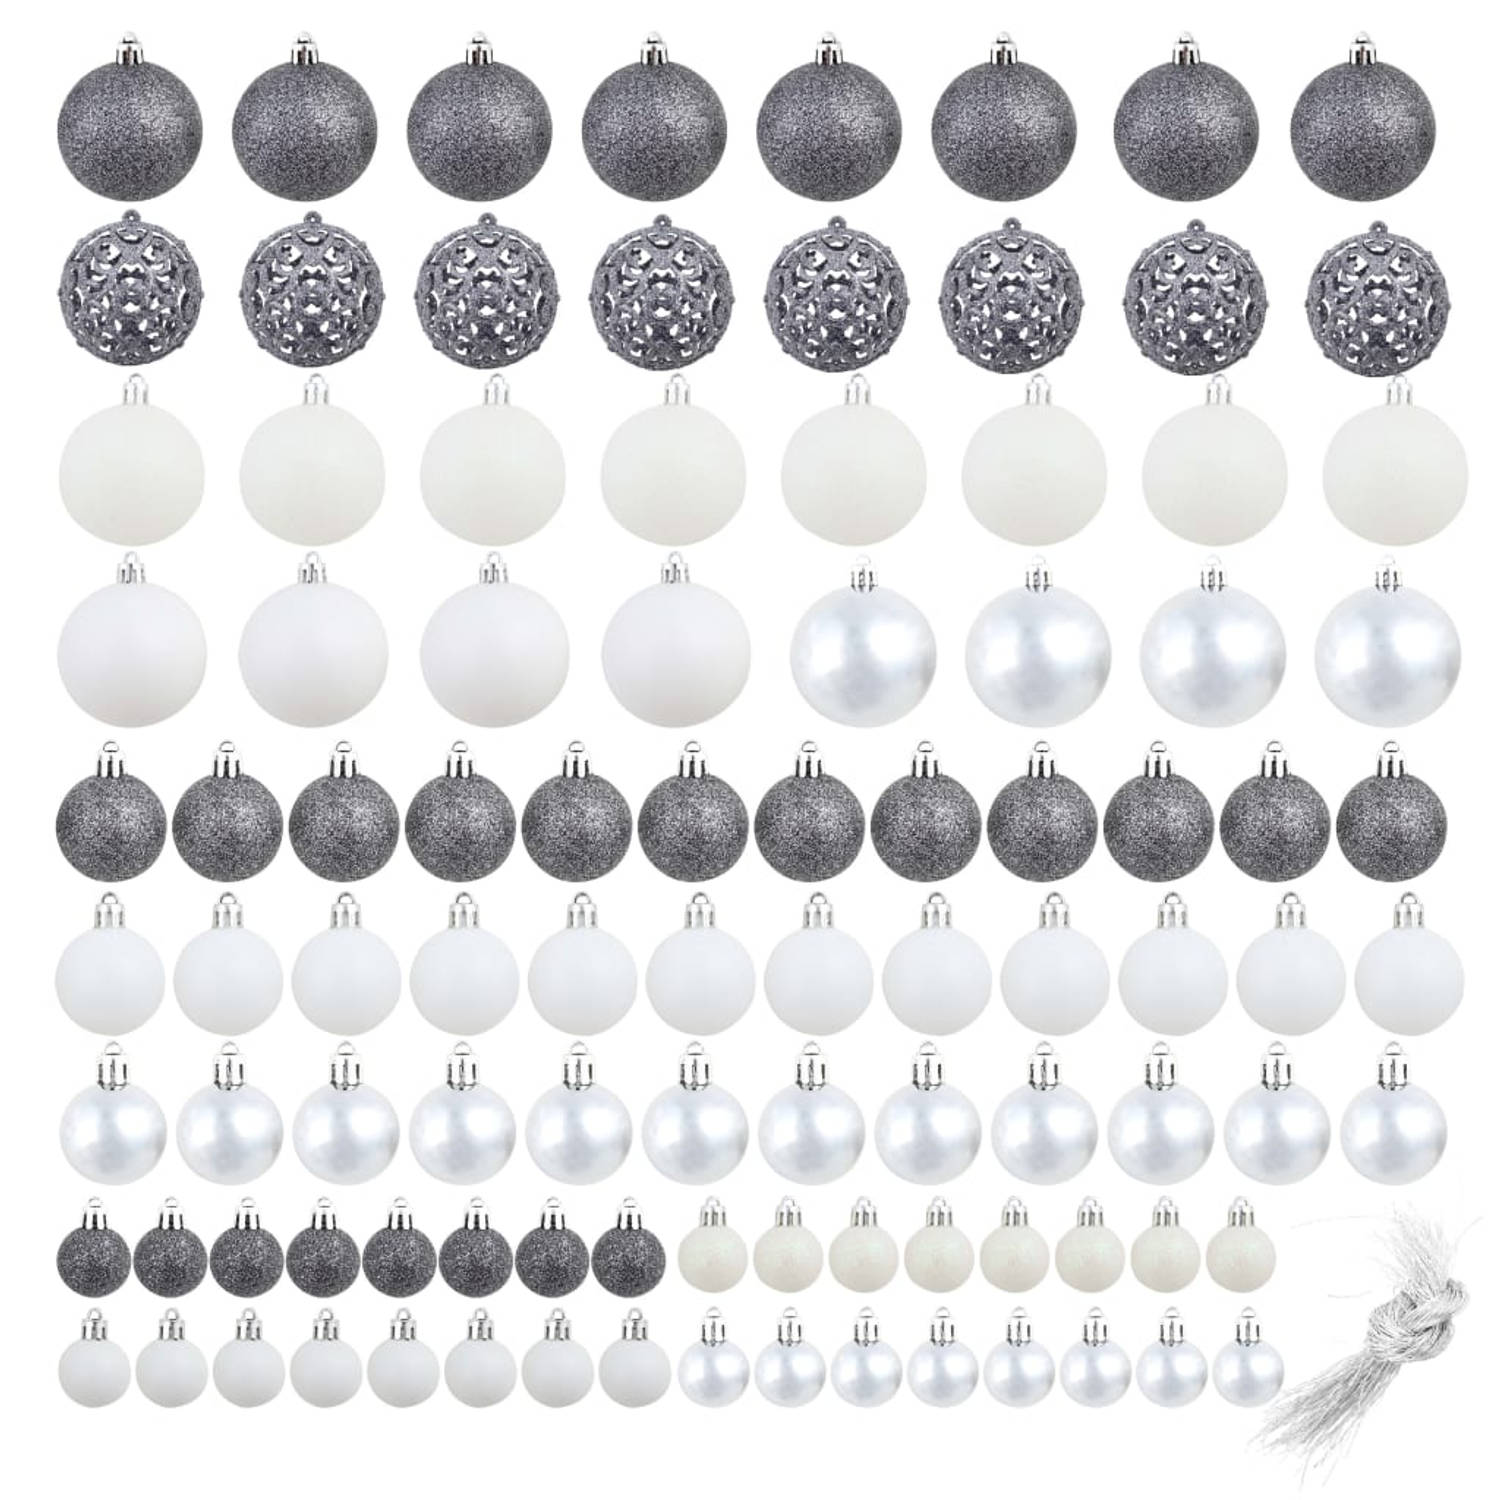 The Living Store Kerstballen Set - Glanzende decoraties voor boom en huis - Lichtgewicht kunststof - 3 maten (3cm - 4cm - 6cm) - Wit en grijs - Inclusief draad